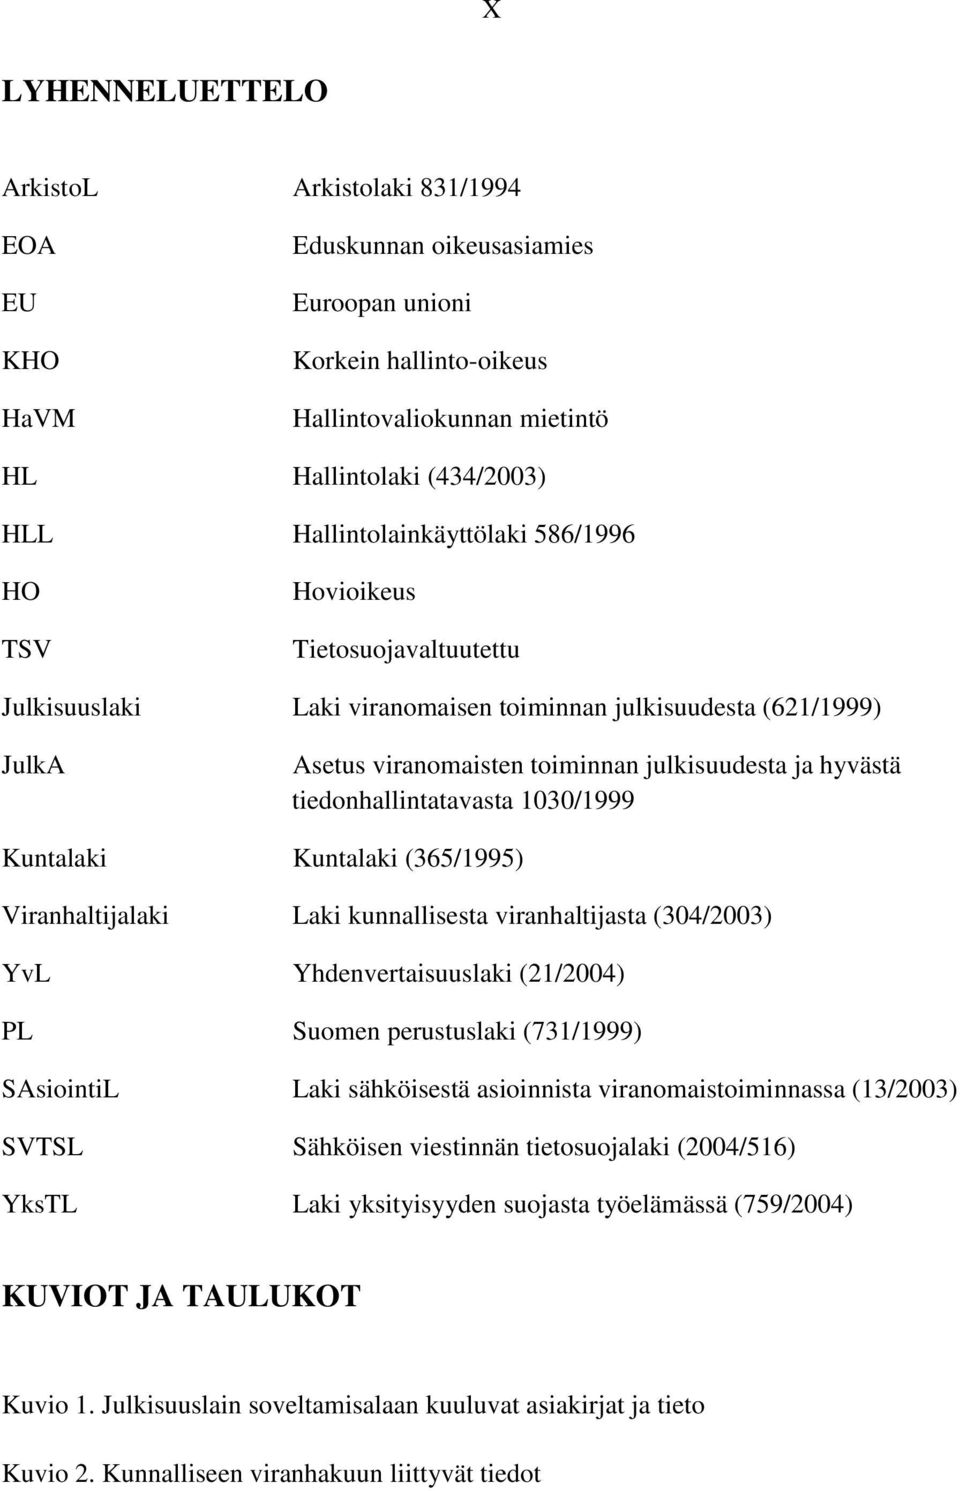 hyvästä tiedonhallintatavasta 1030/1999 Kuntalaki Kuntalaki (365/1995) Viranhaltijalaki Laki kunnallisesta viranhaltijasta (304/2003) YvL Yhdenvertaisuuslaki (21/2004) PL Suomen perustuslaki